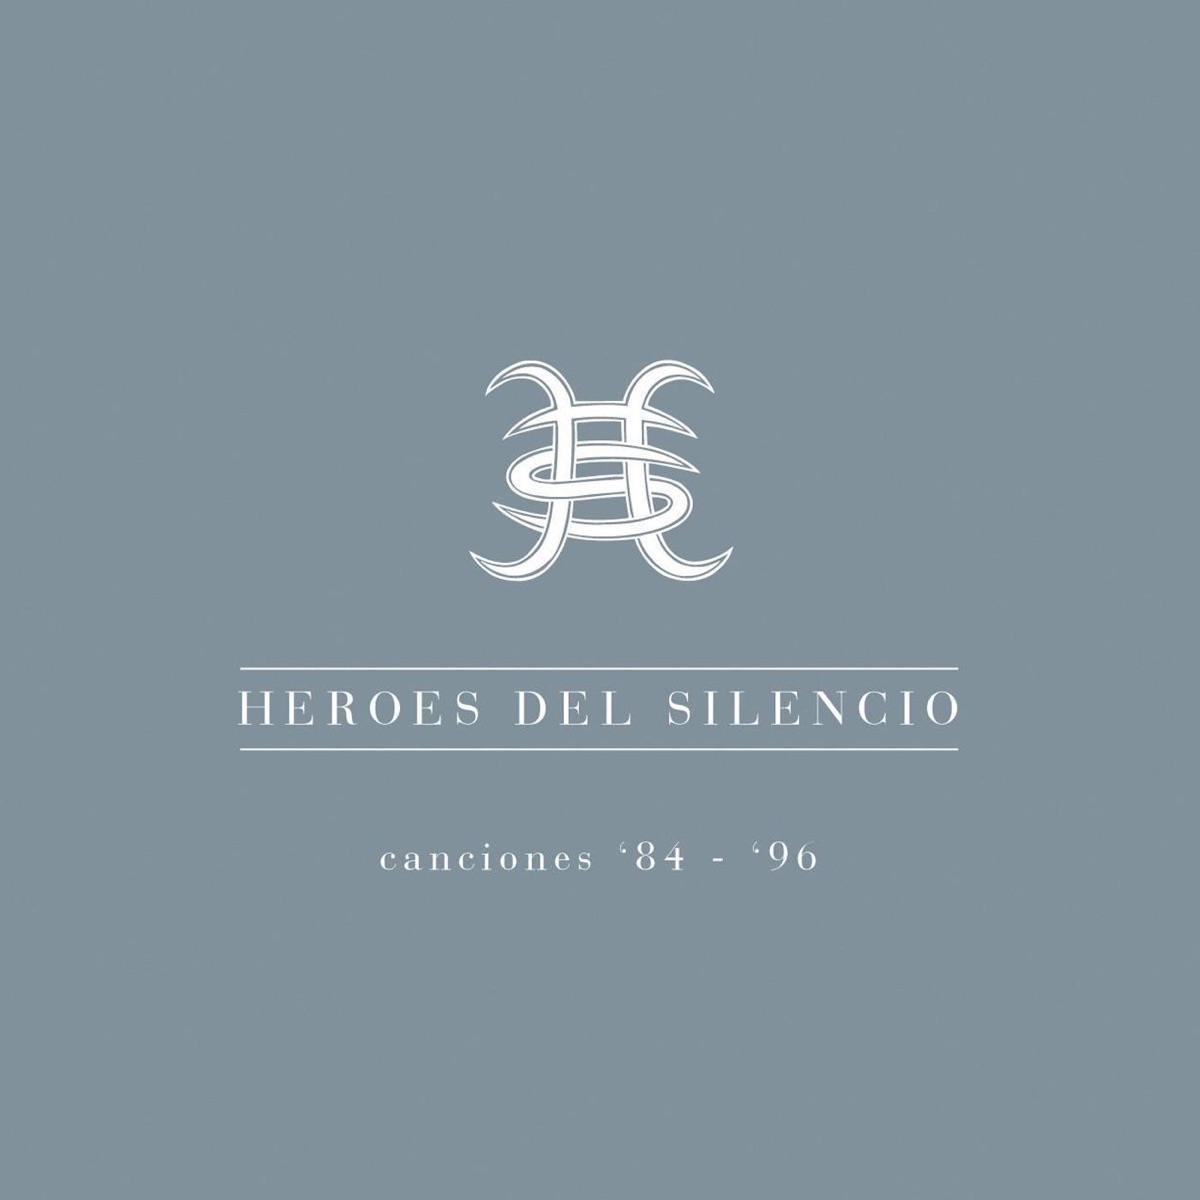 Héroes del Silencio - Canciones 84-96 - Album by Héroes del Silencio -  Apple Music